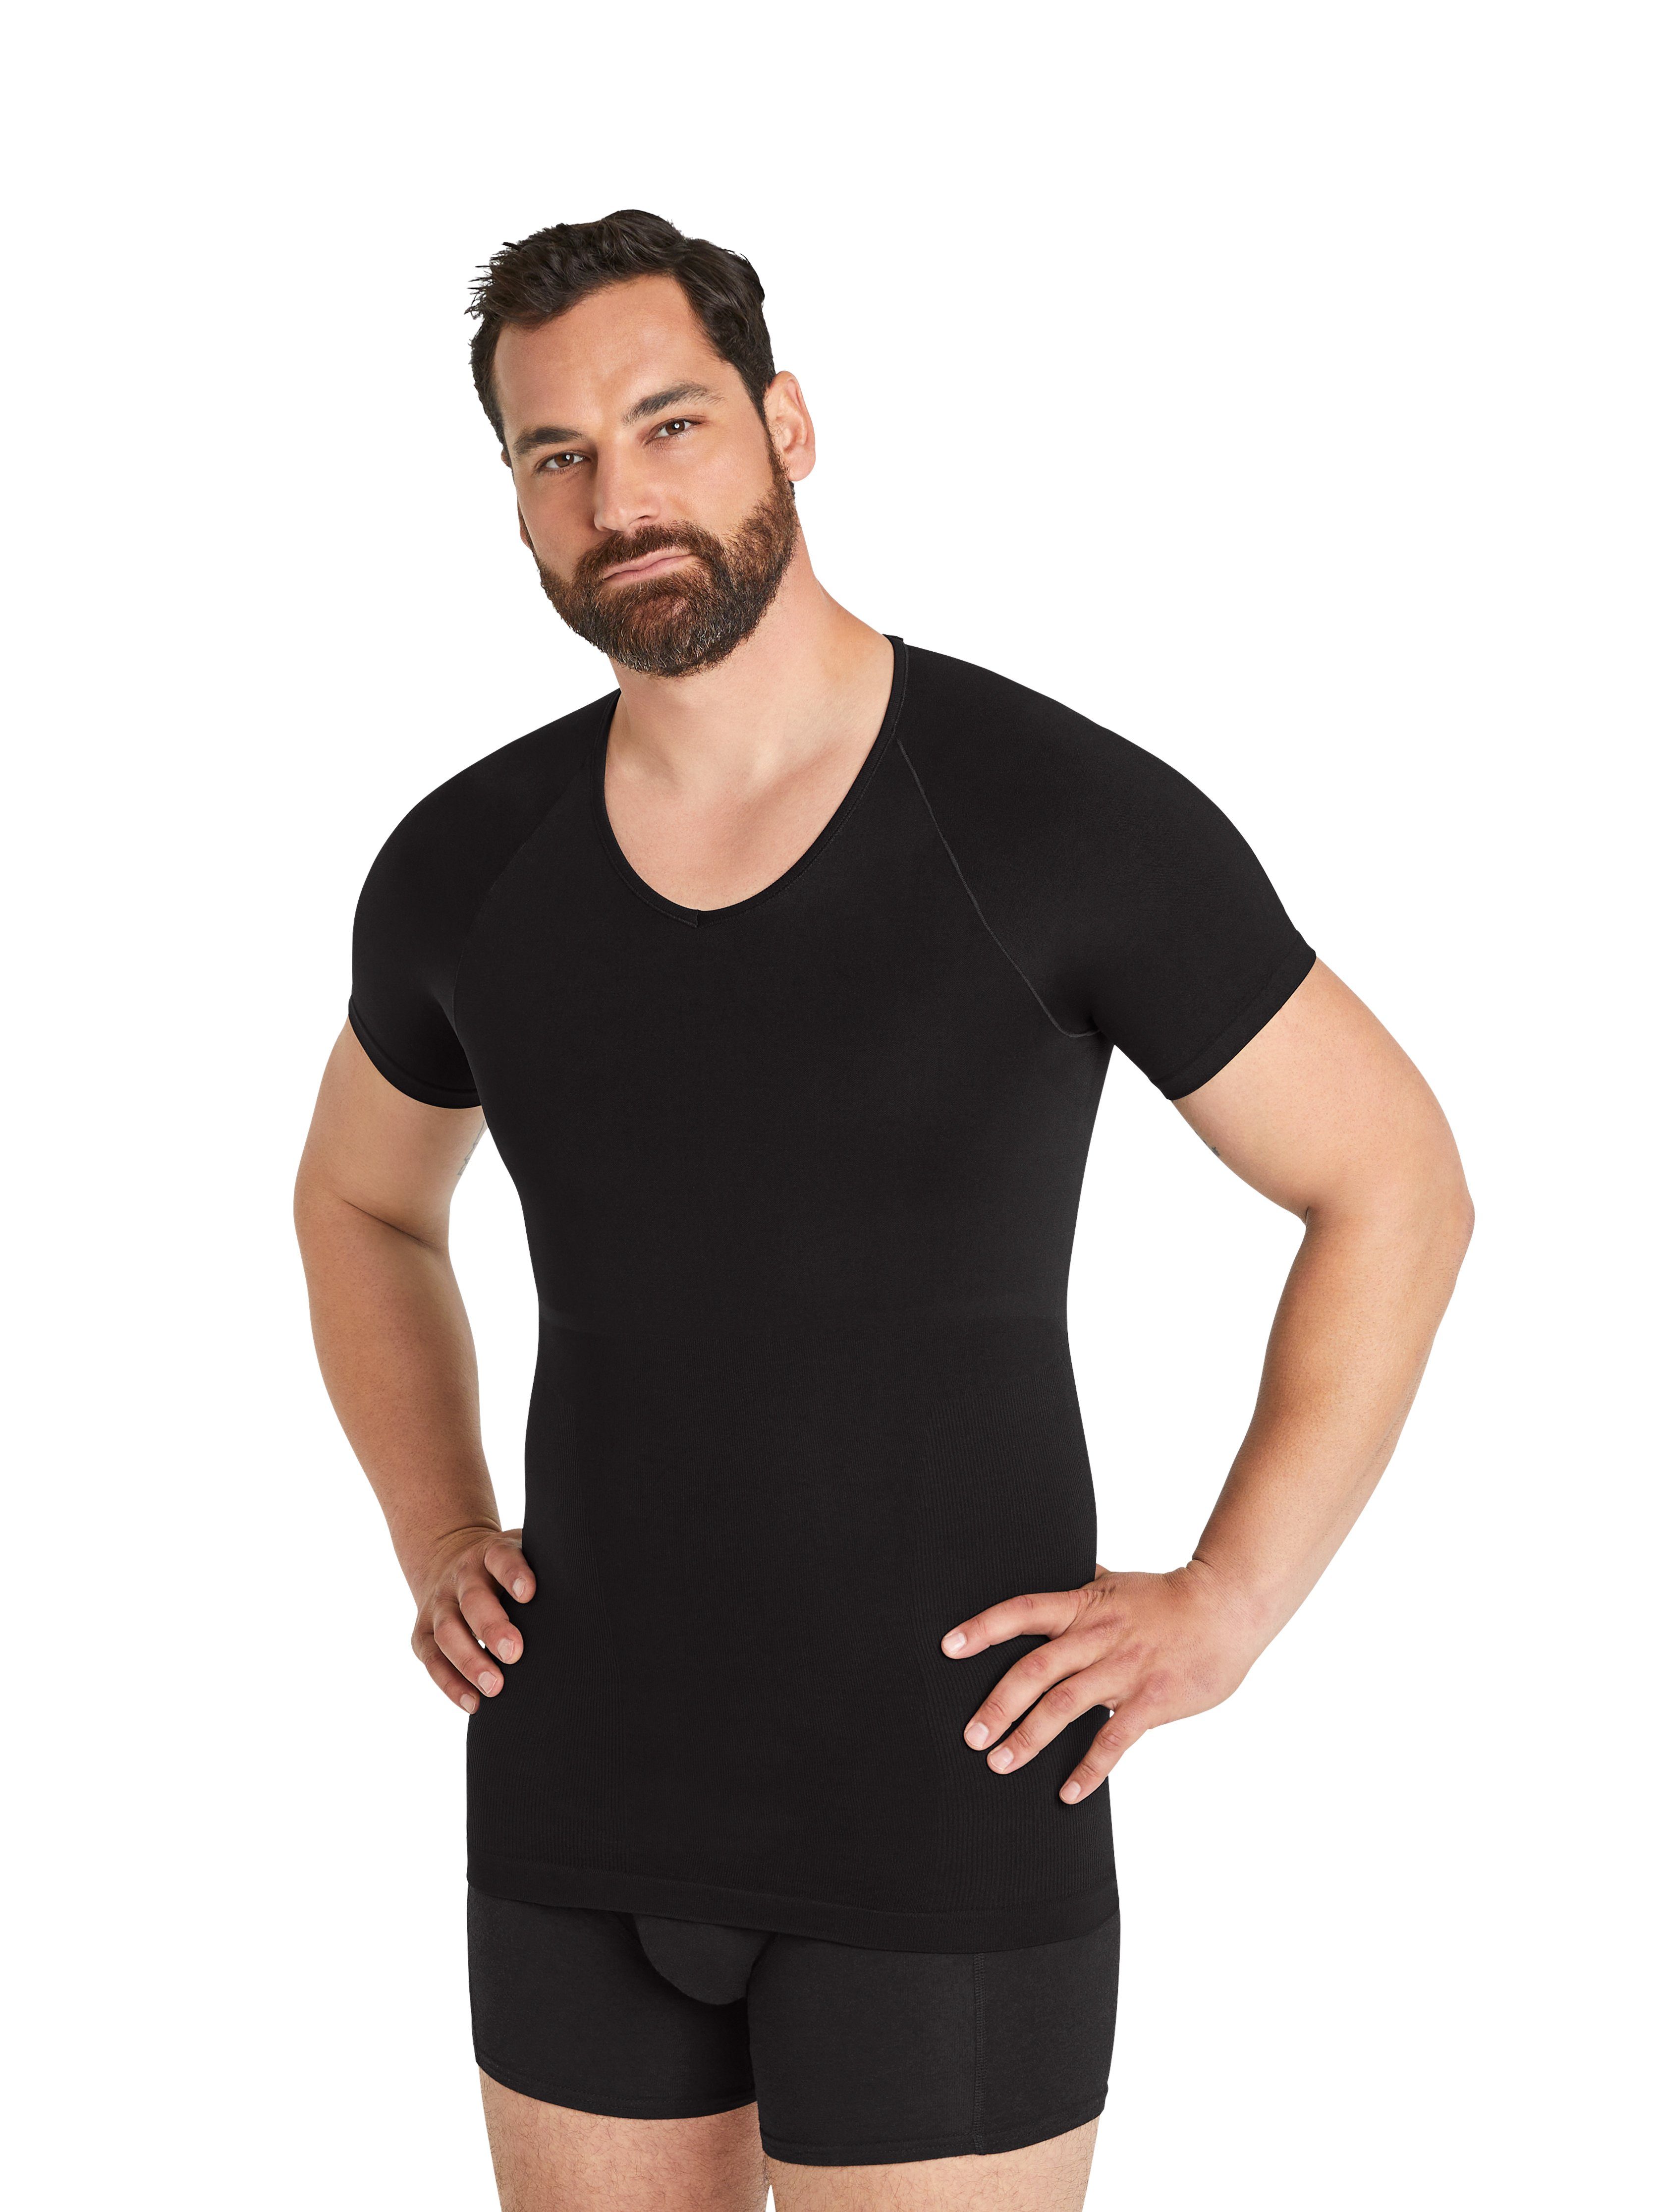 FINN Design Shapinghemd Seamless Kompressions-Unterhemd Herren ohne Nähte Starker Body-Shaper für Männer Schwarz